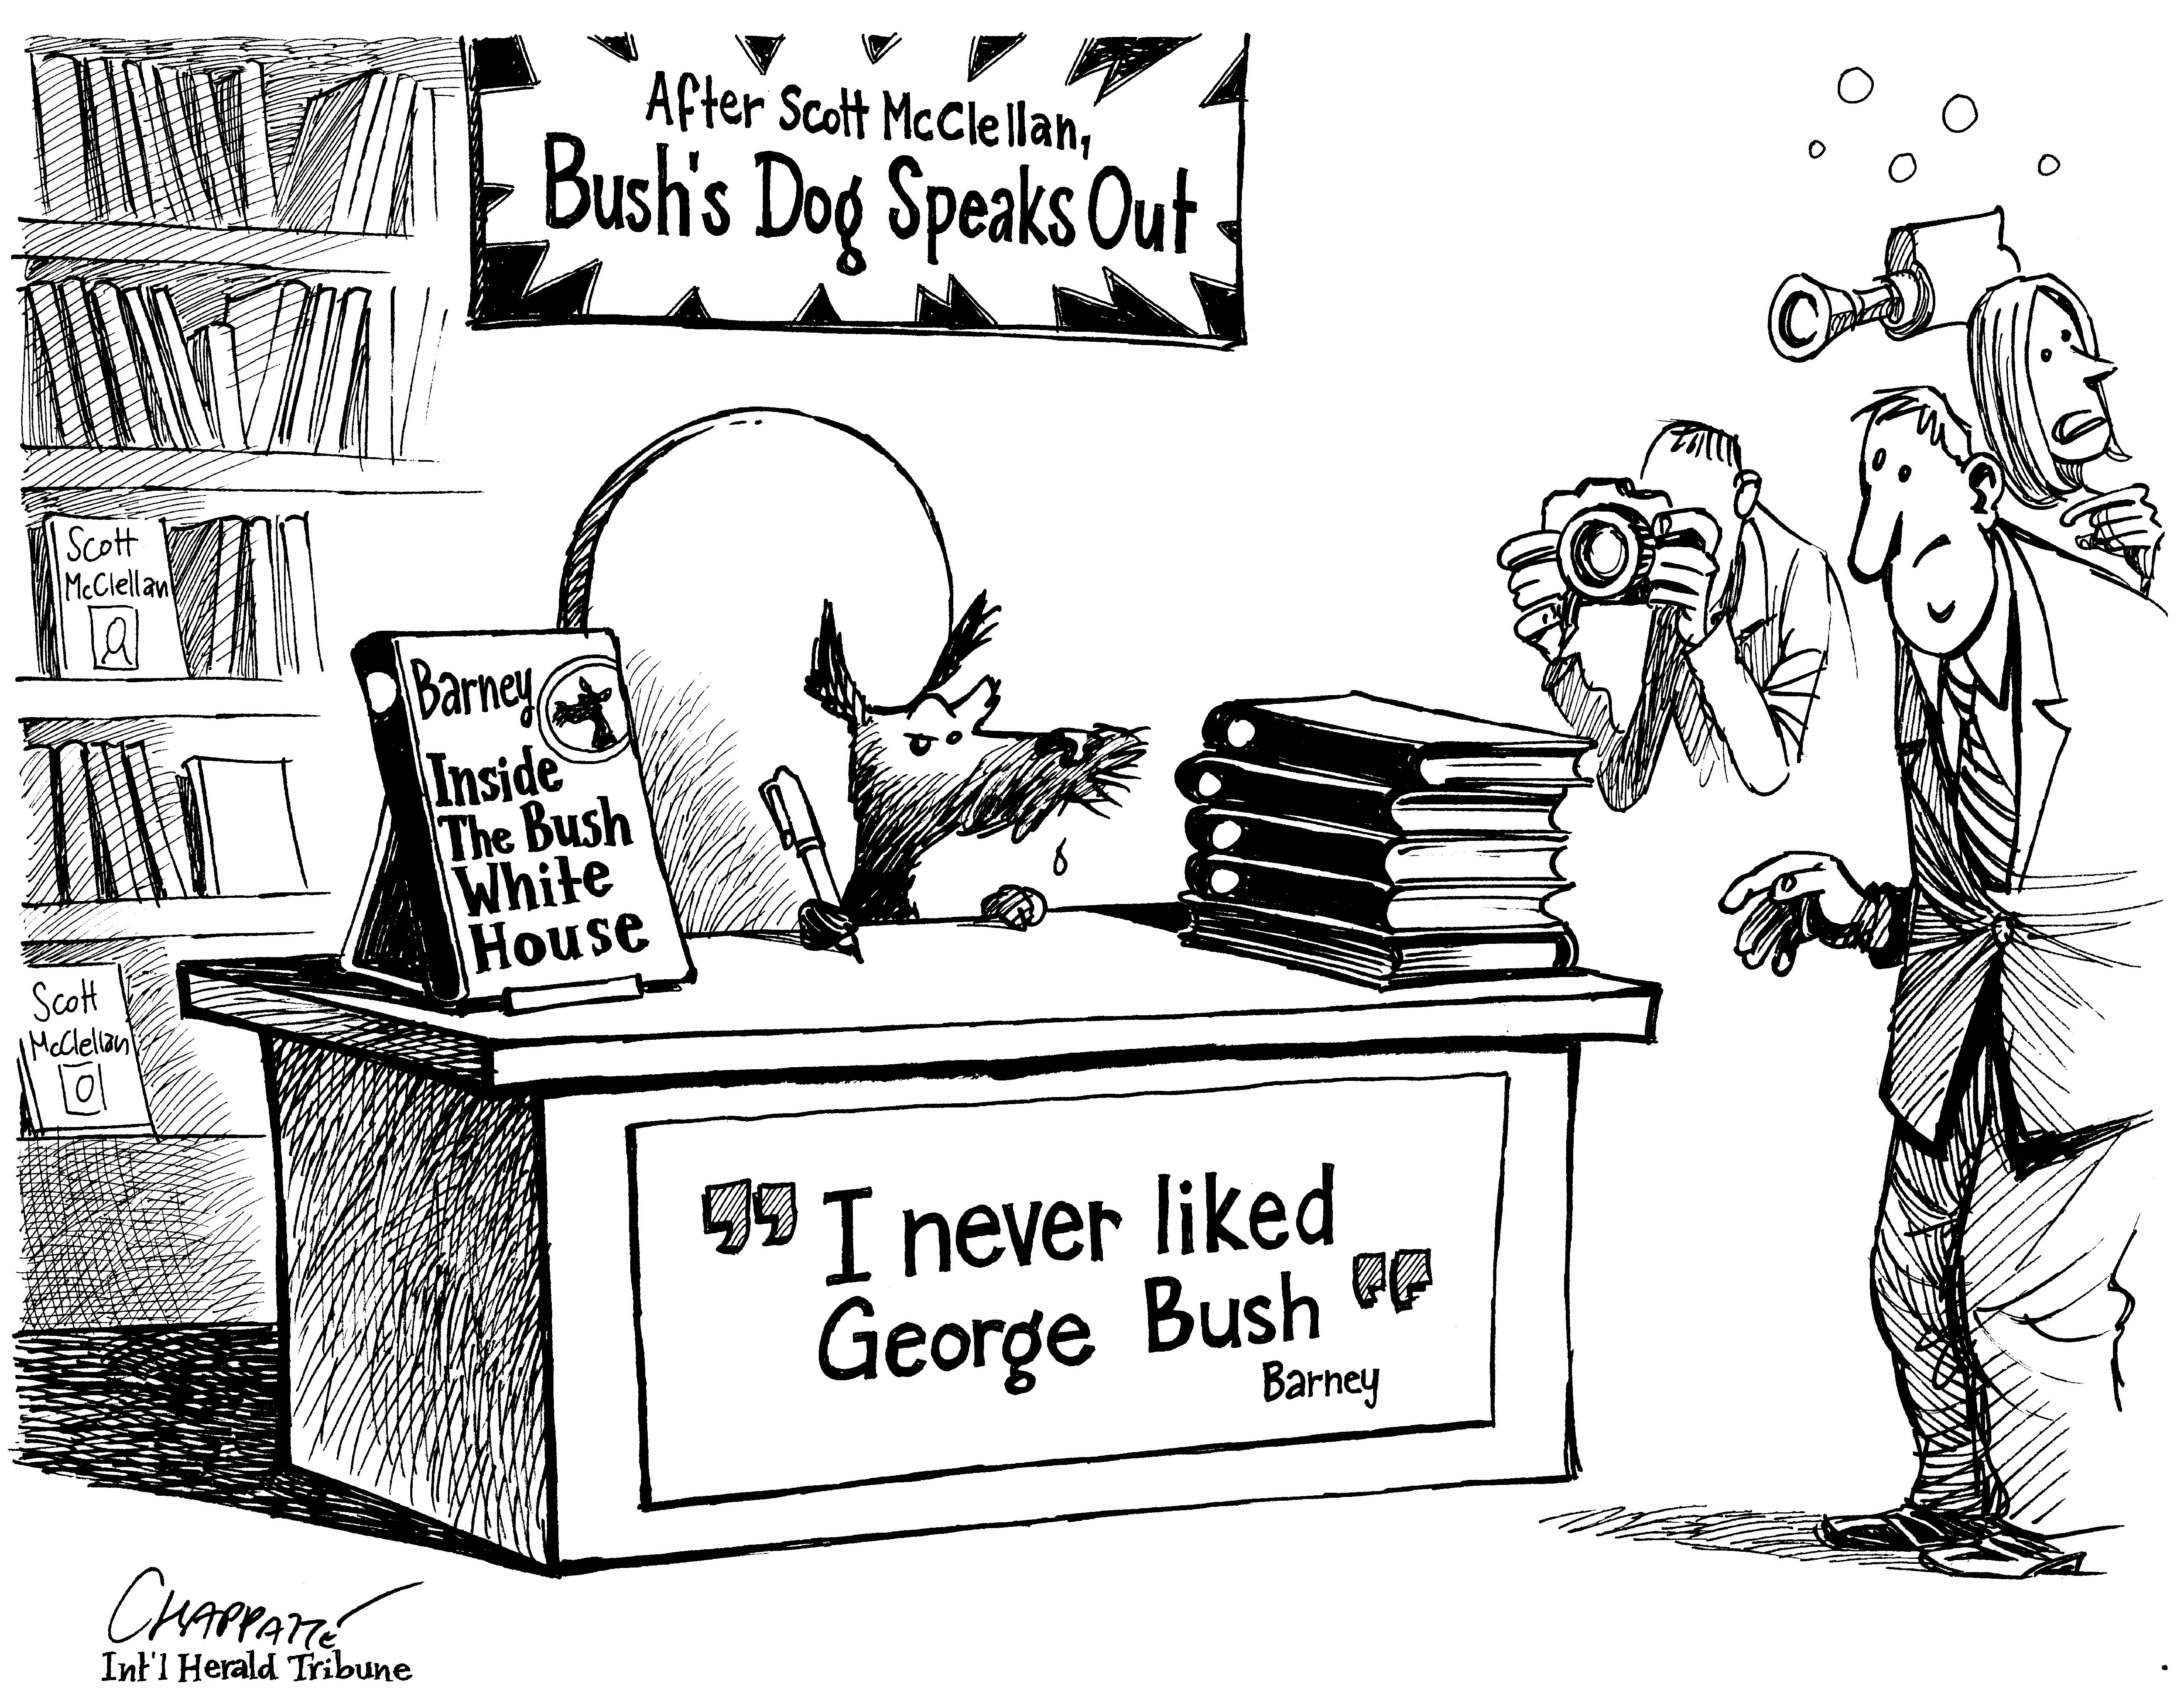 Loyal Servant Turns Against Bush